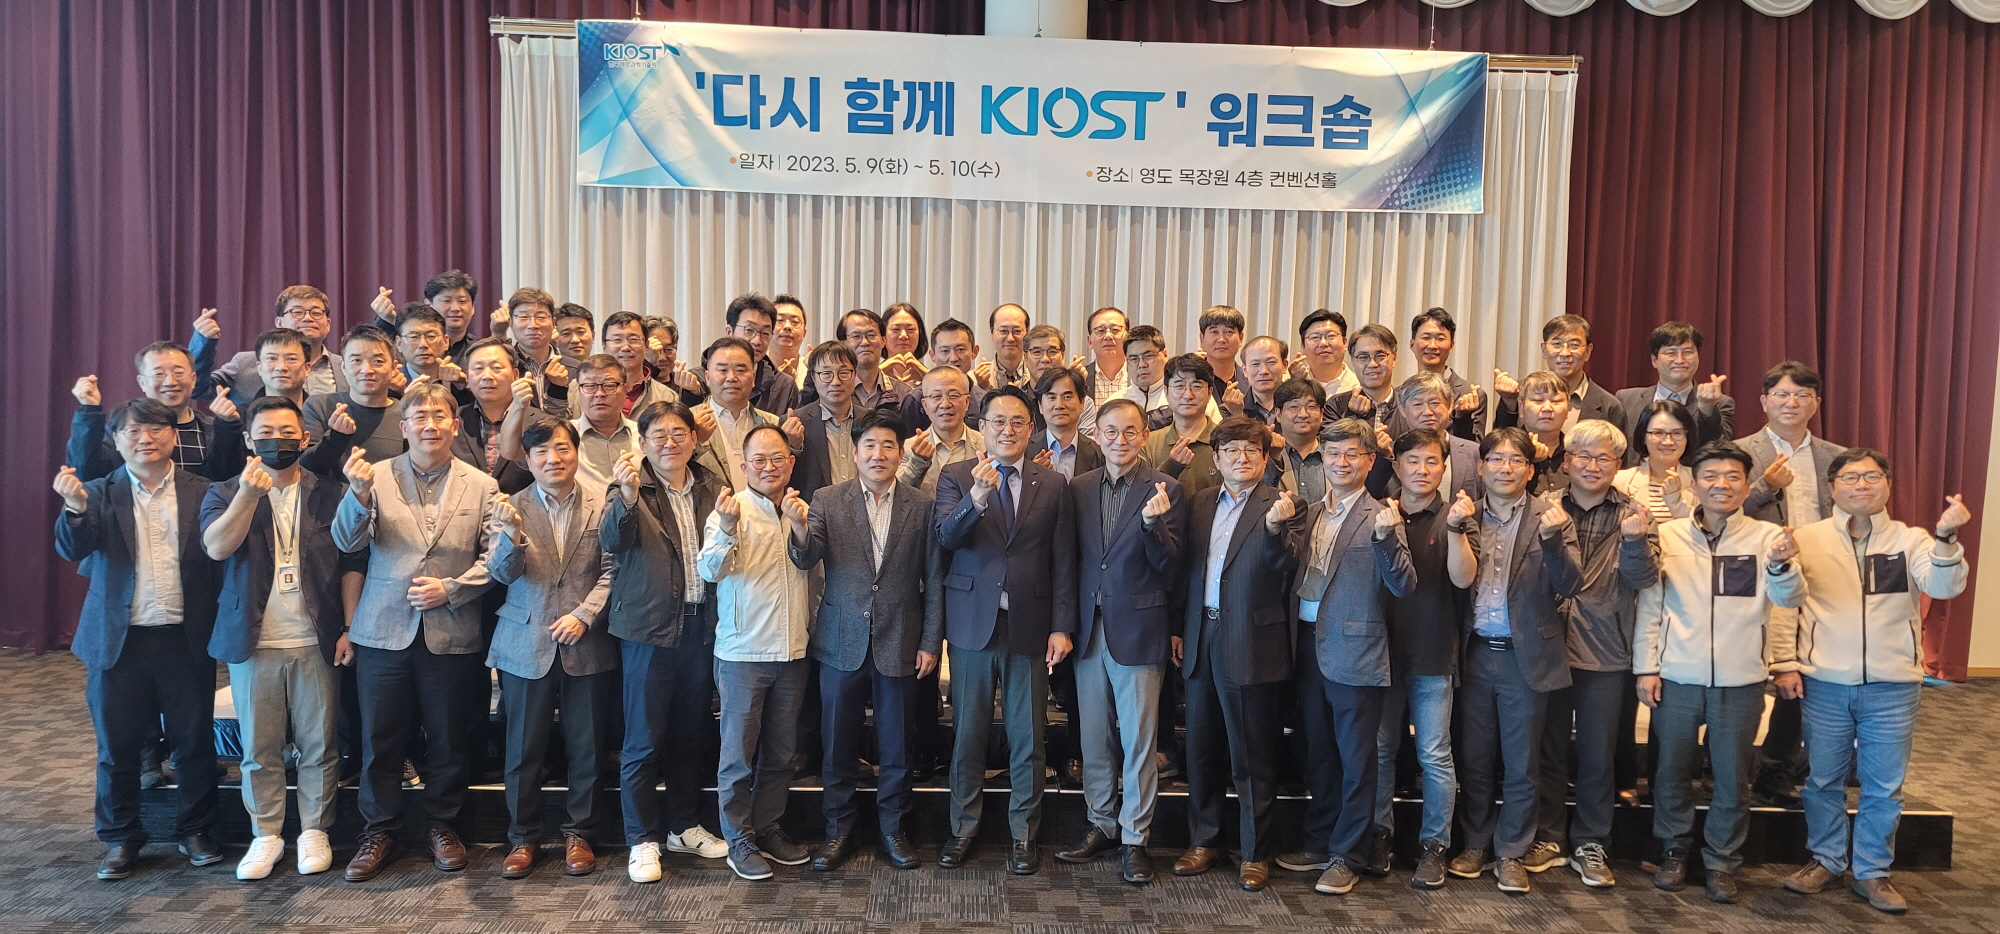 KIOST holds a workshop on KIOST together again
							